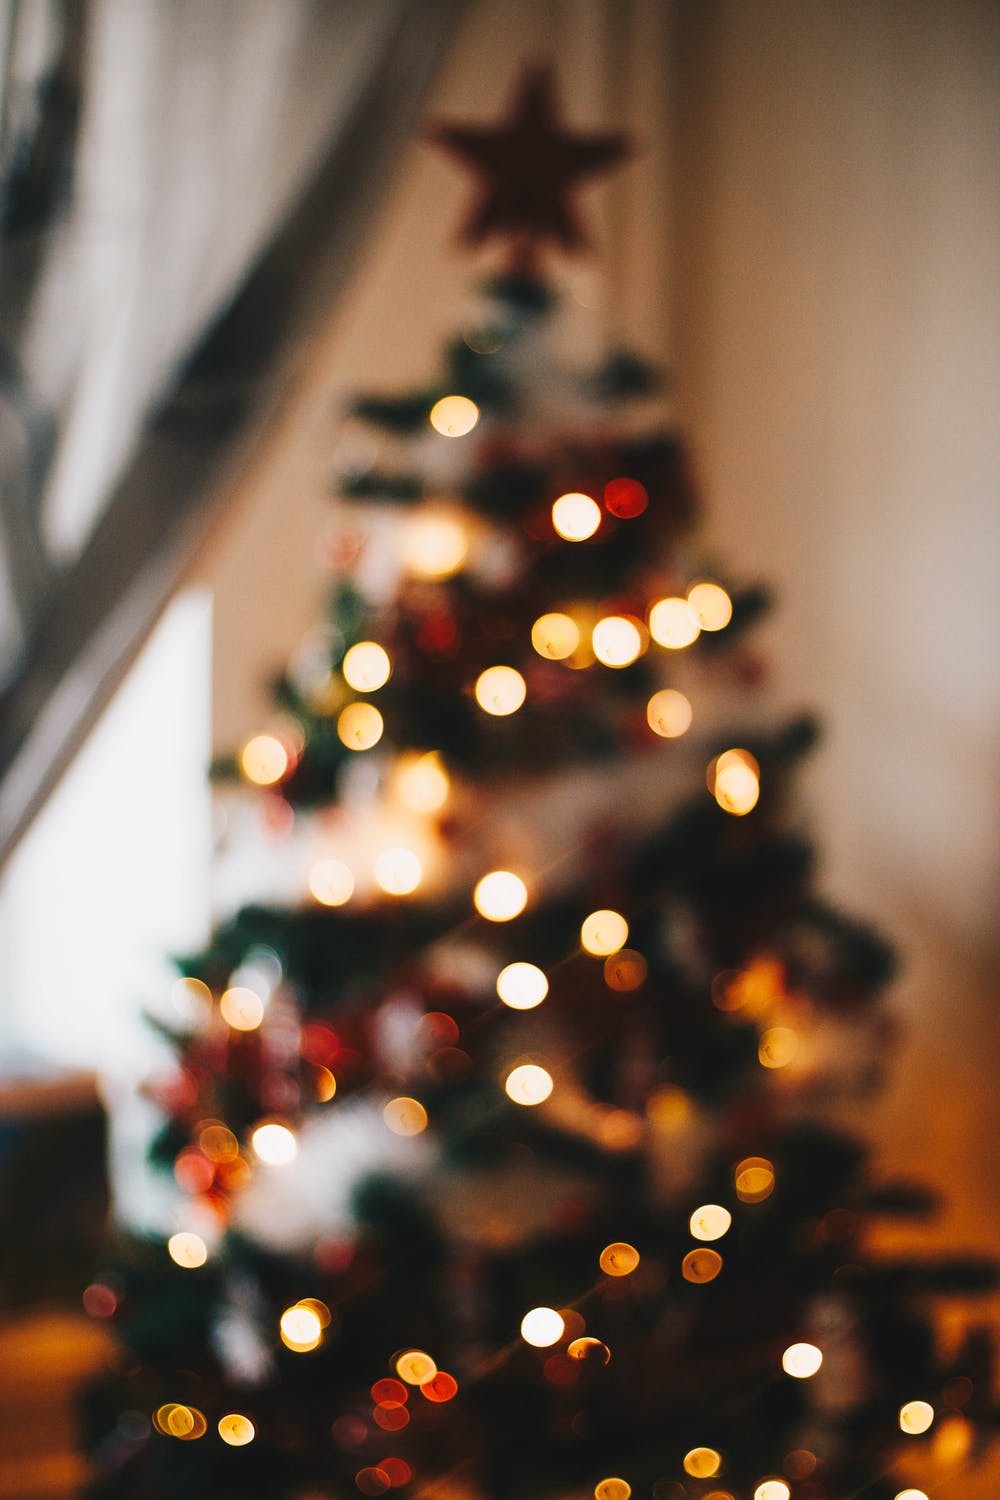 Truyền thống Giáng sinh của Marie-Chantal là một sự kết hợp giữa truyền thống và thẩm mỹ tinh tế. Với các hình ảnh tươi sáng và đầy màu sắc, bạn sẽ được trải nghiệm những phút giây tuyệt vời trong không gian Giáng sinh.